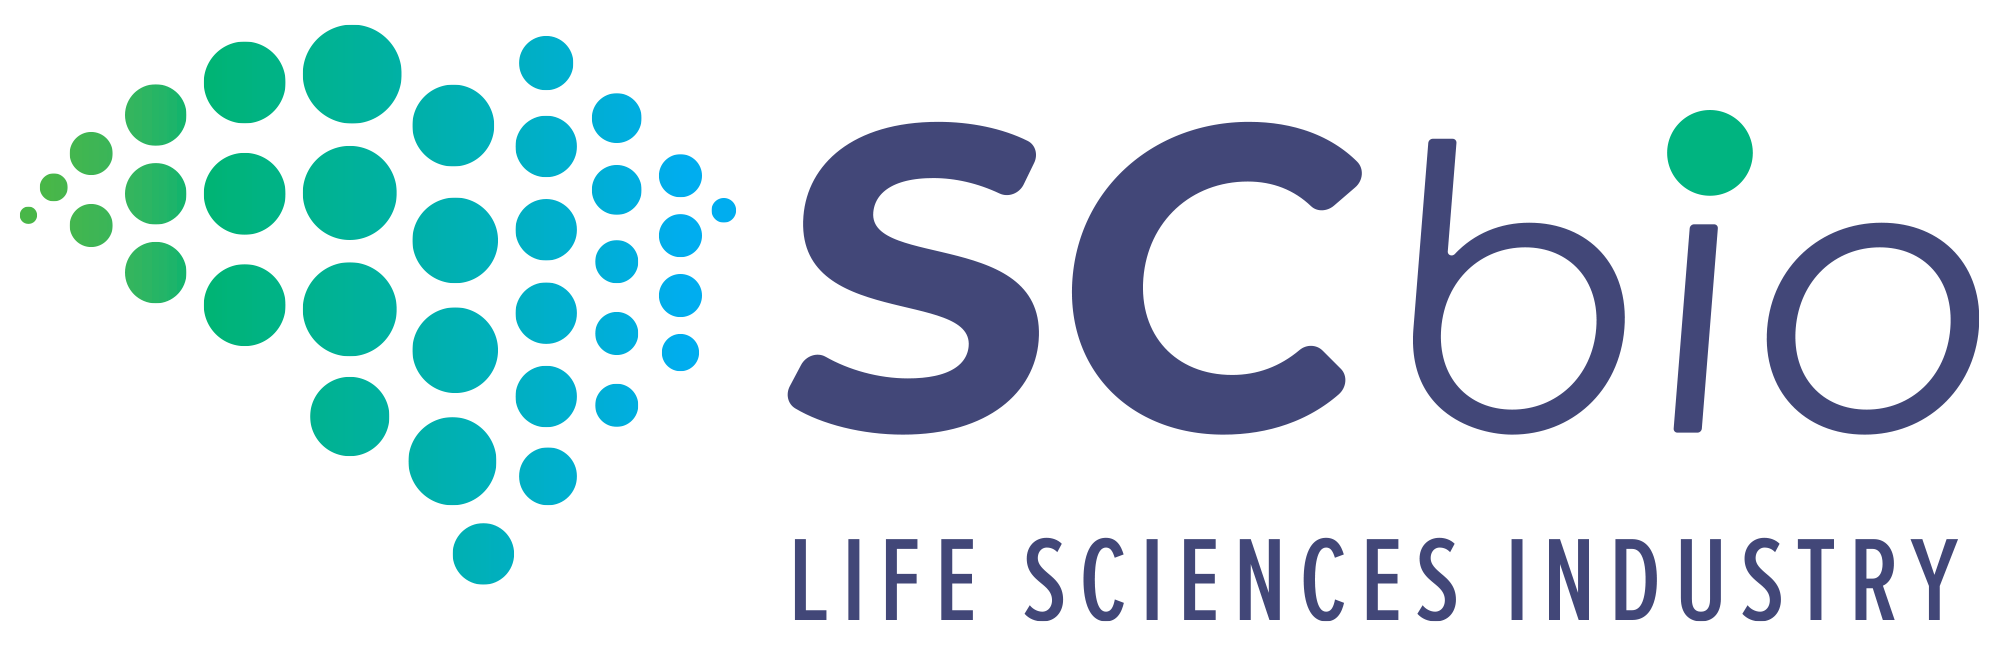 SCBio Logo Color Horizontal